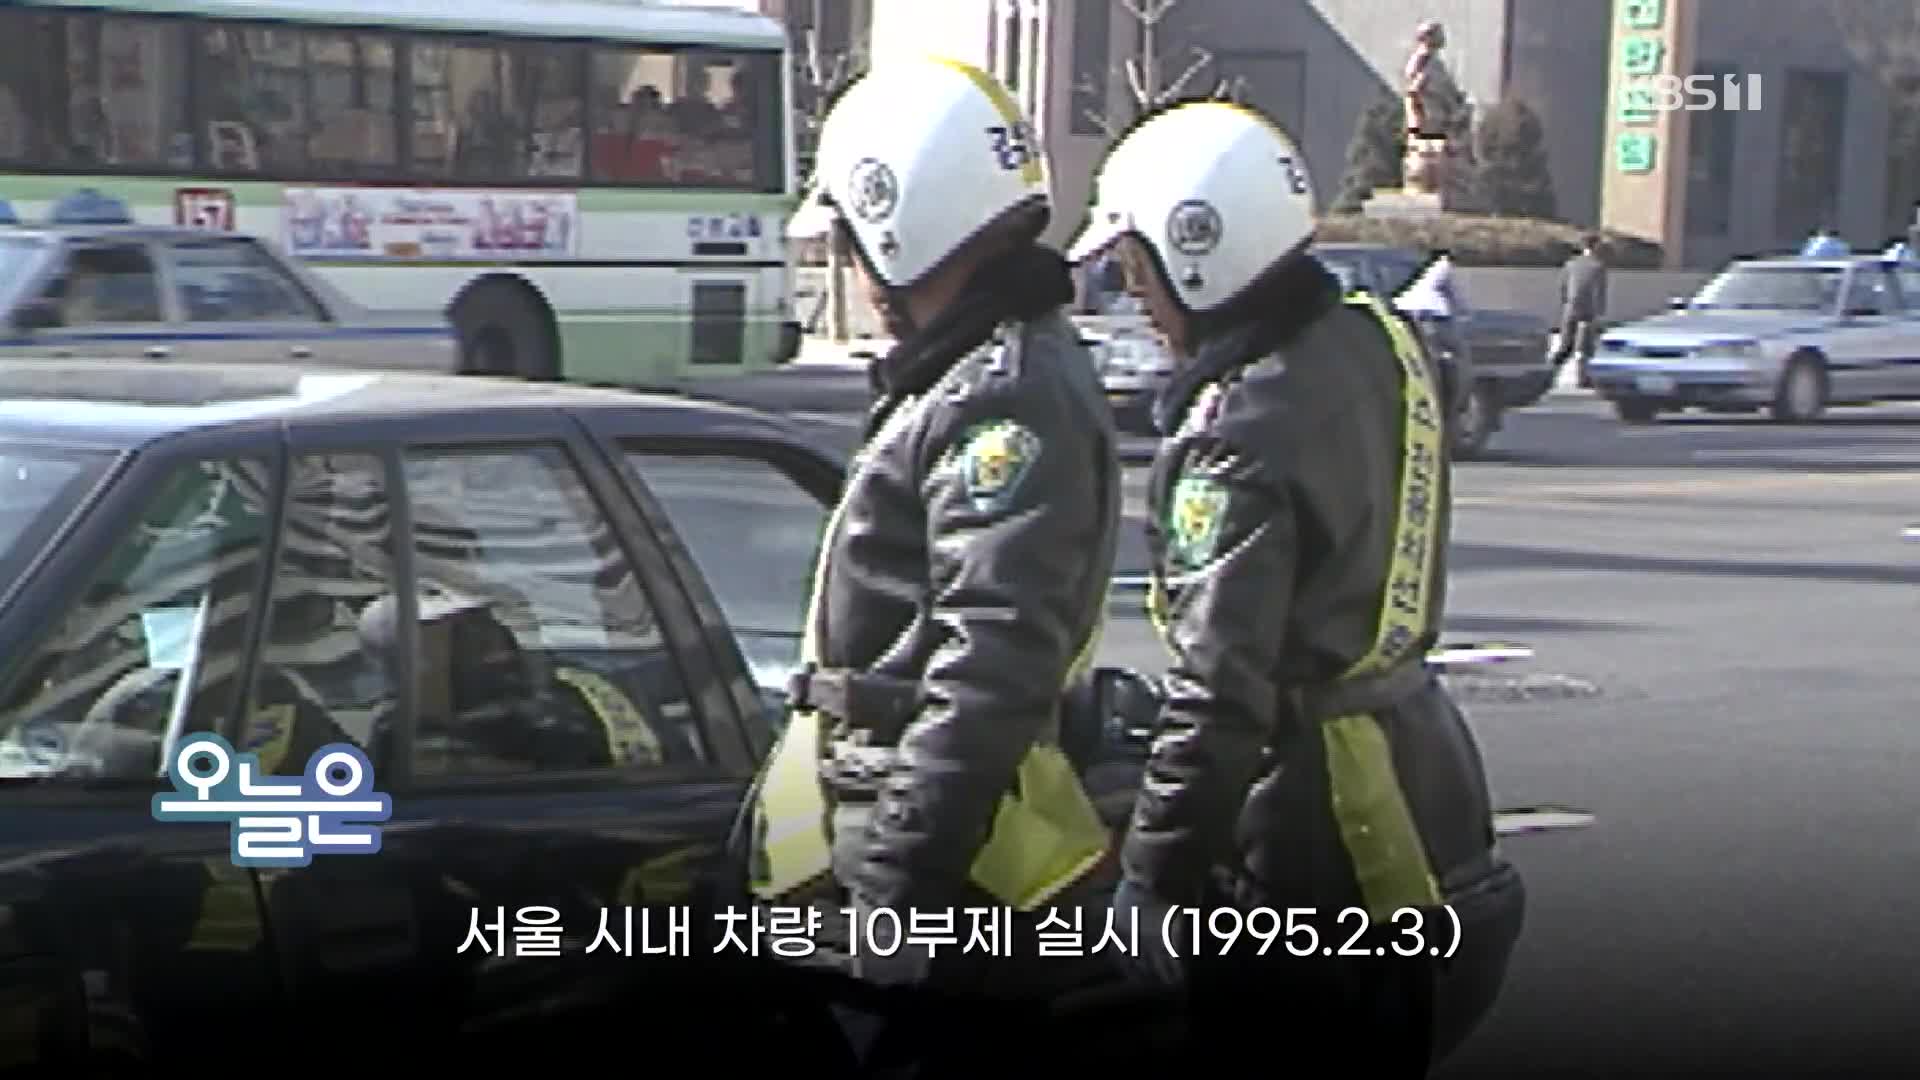 [오늘은] 서울 시내 차량 10부제 실시 (1995.2.3.)